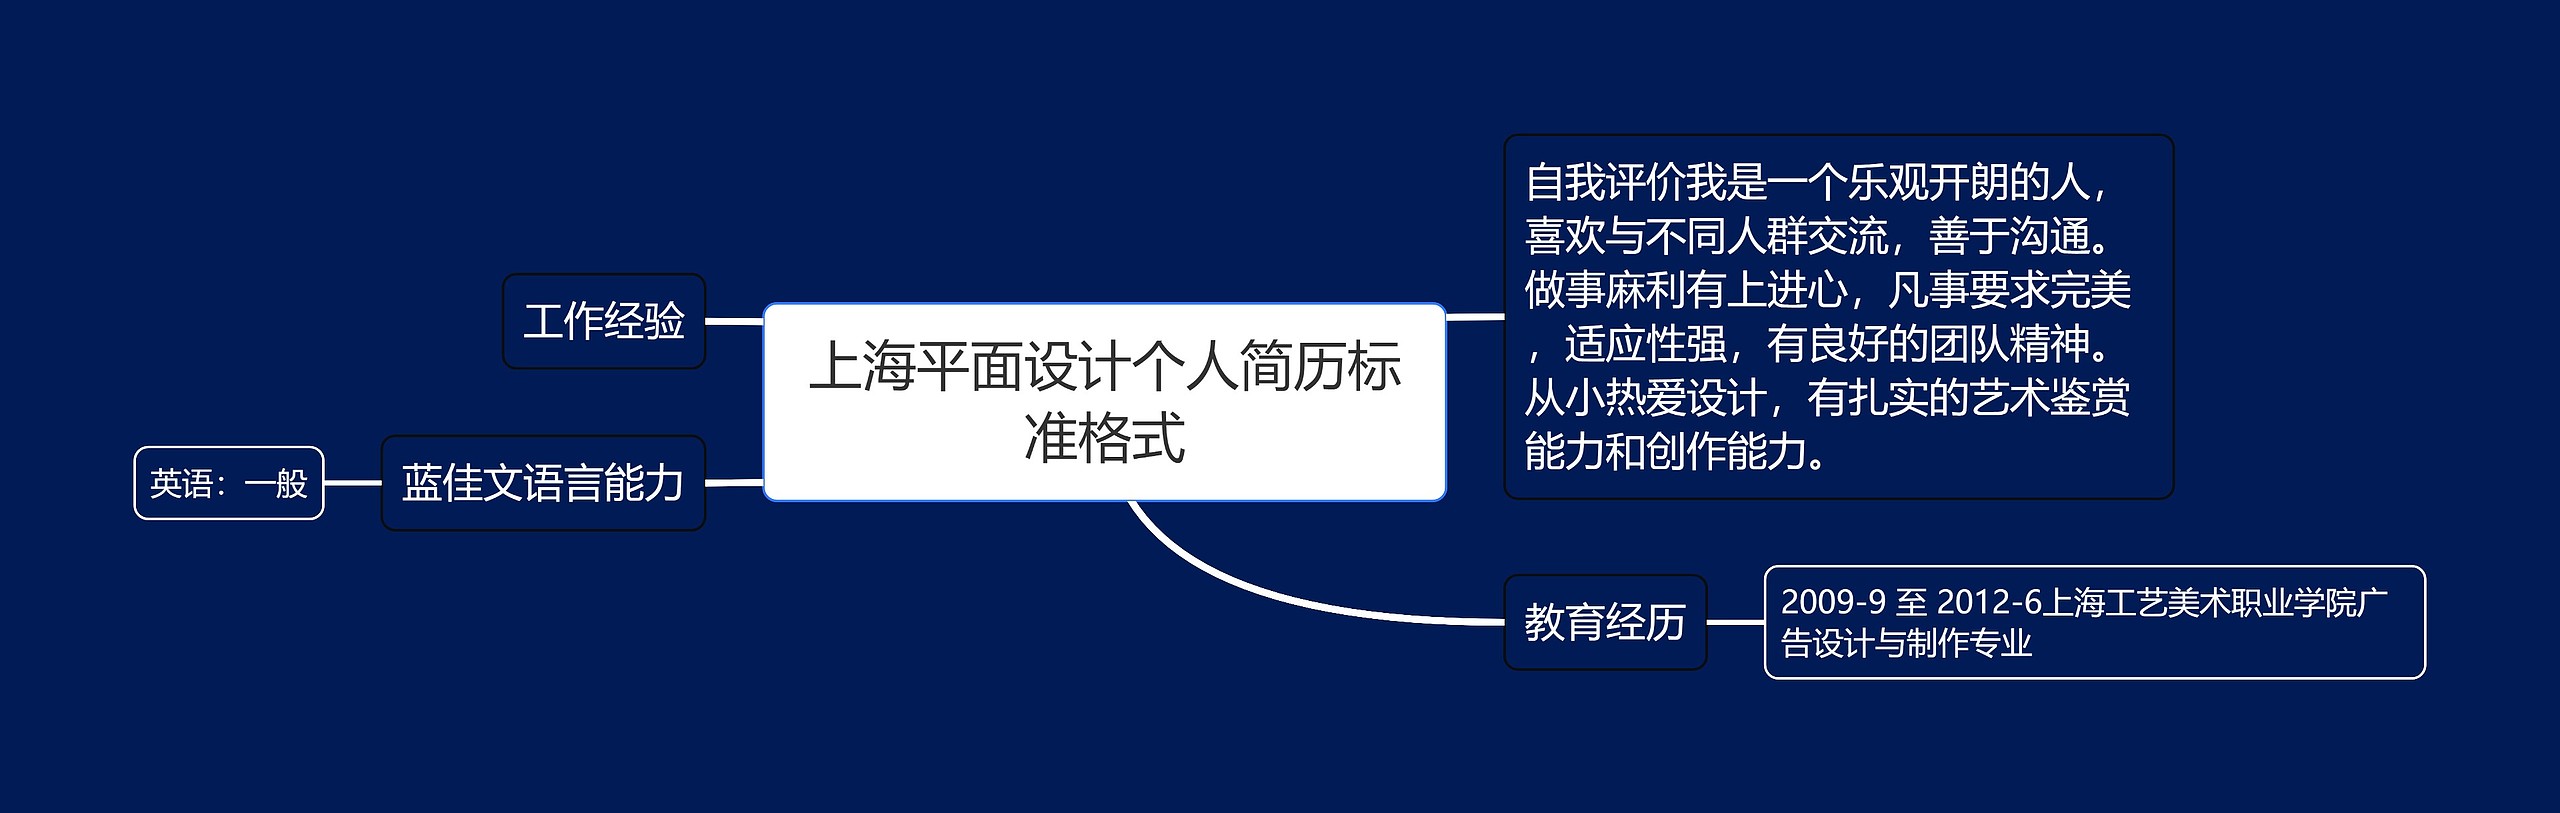 上海平面设计个人简历标准格式思维导图